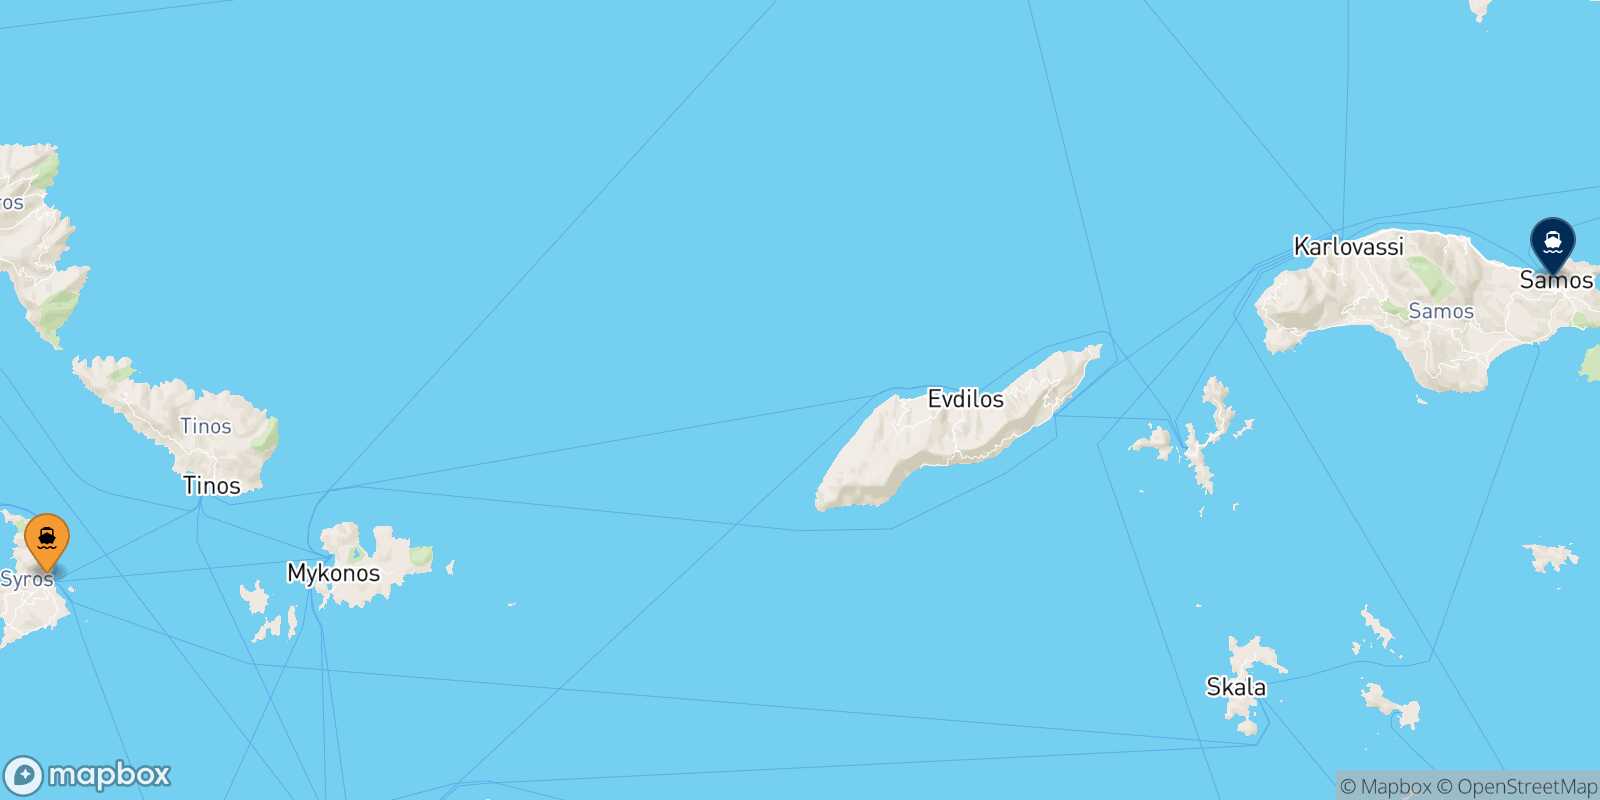 Syros Vathi (Samos) route map